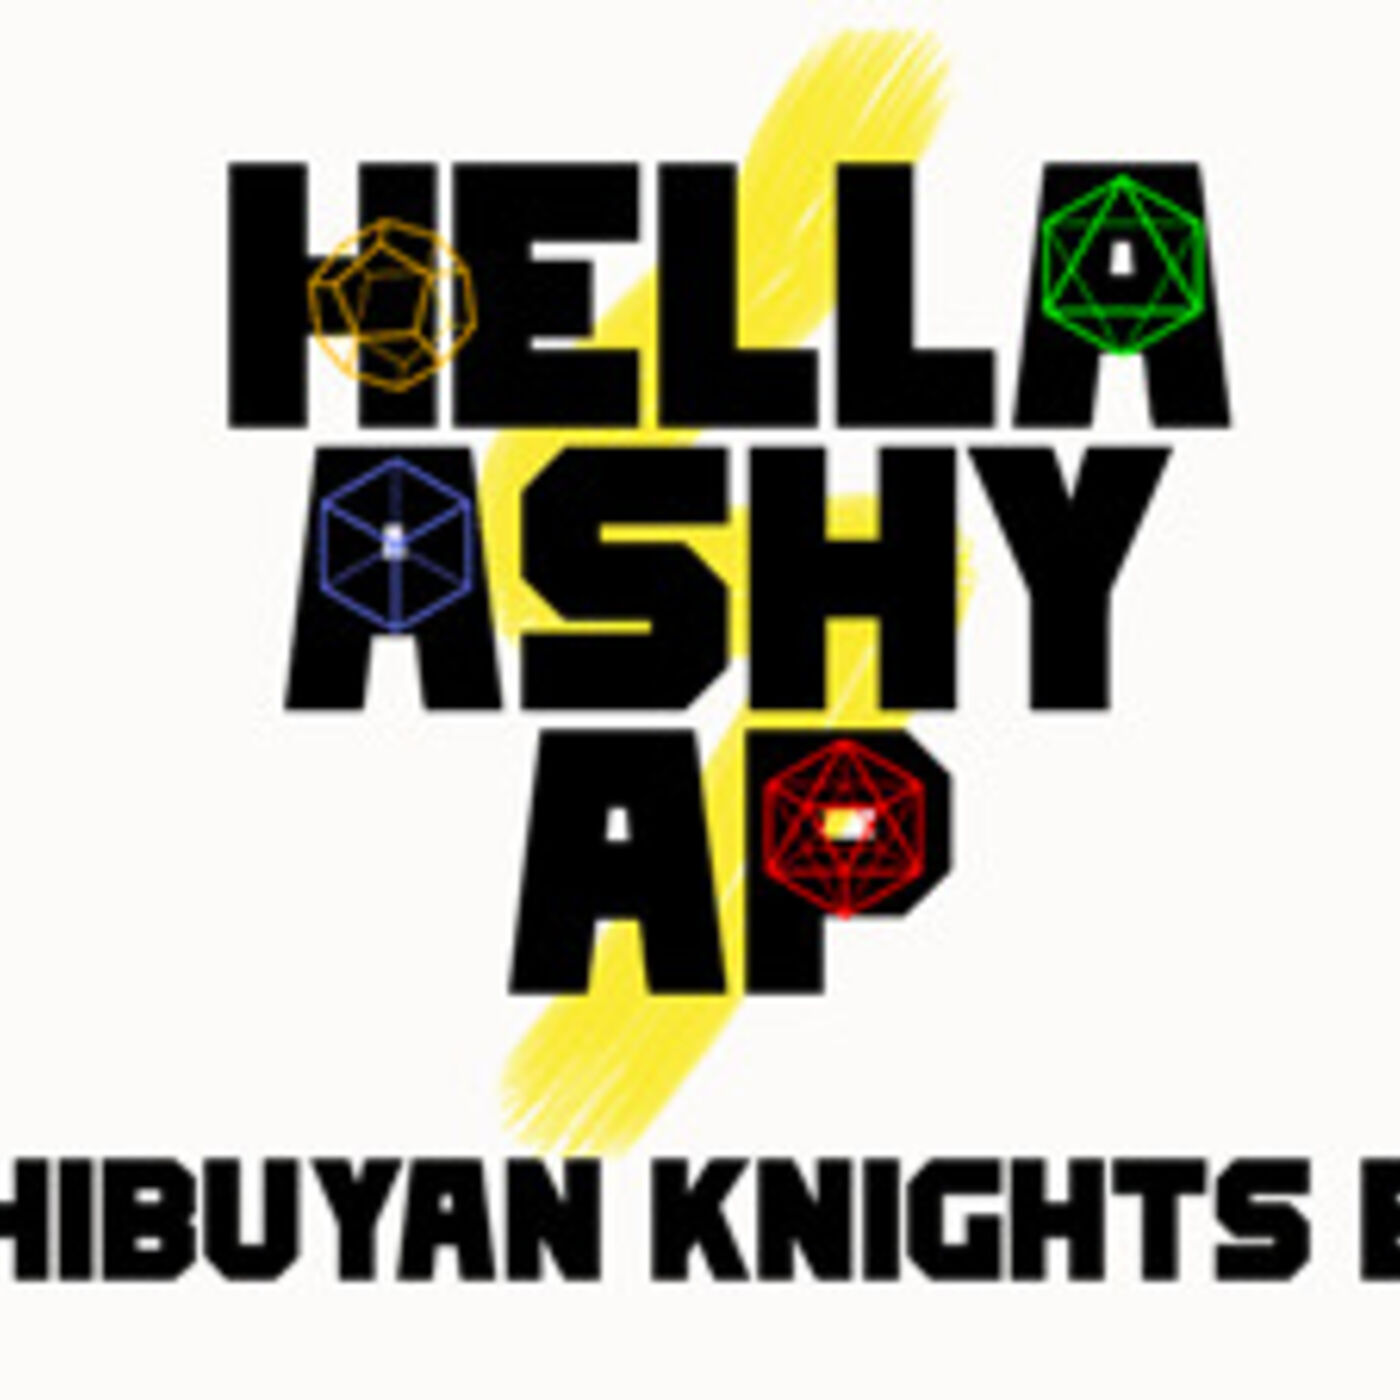 Hella Ashy AP Episode 1